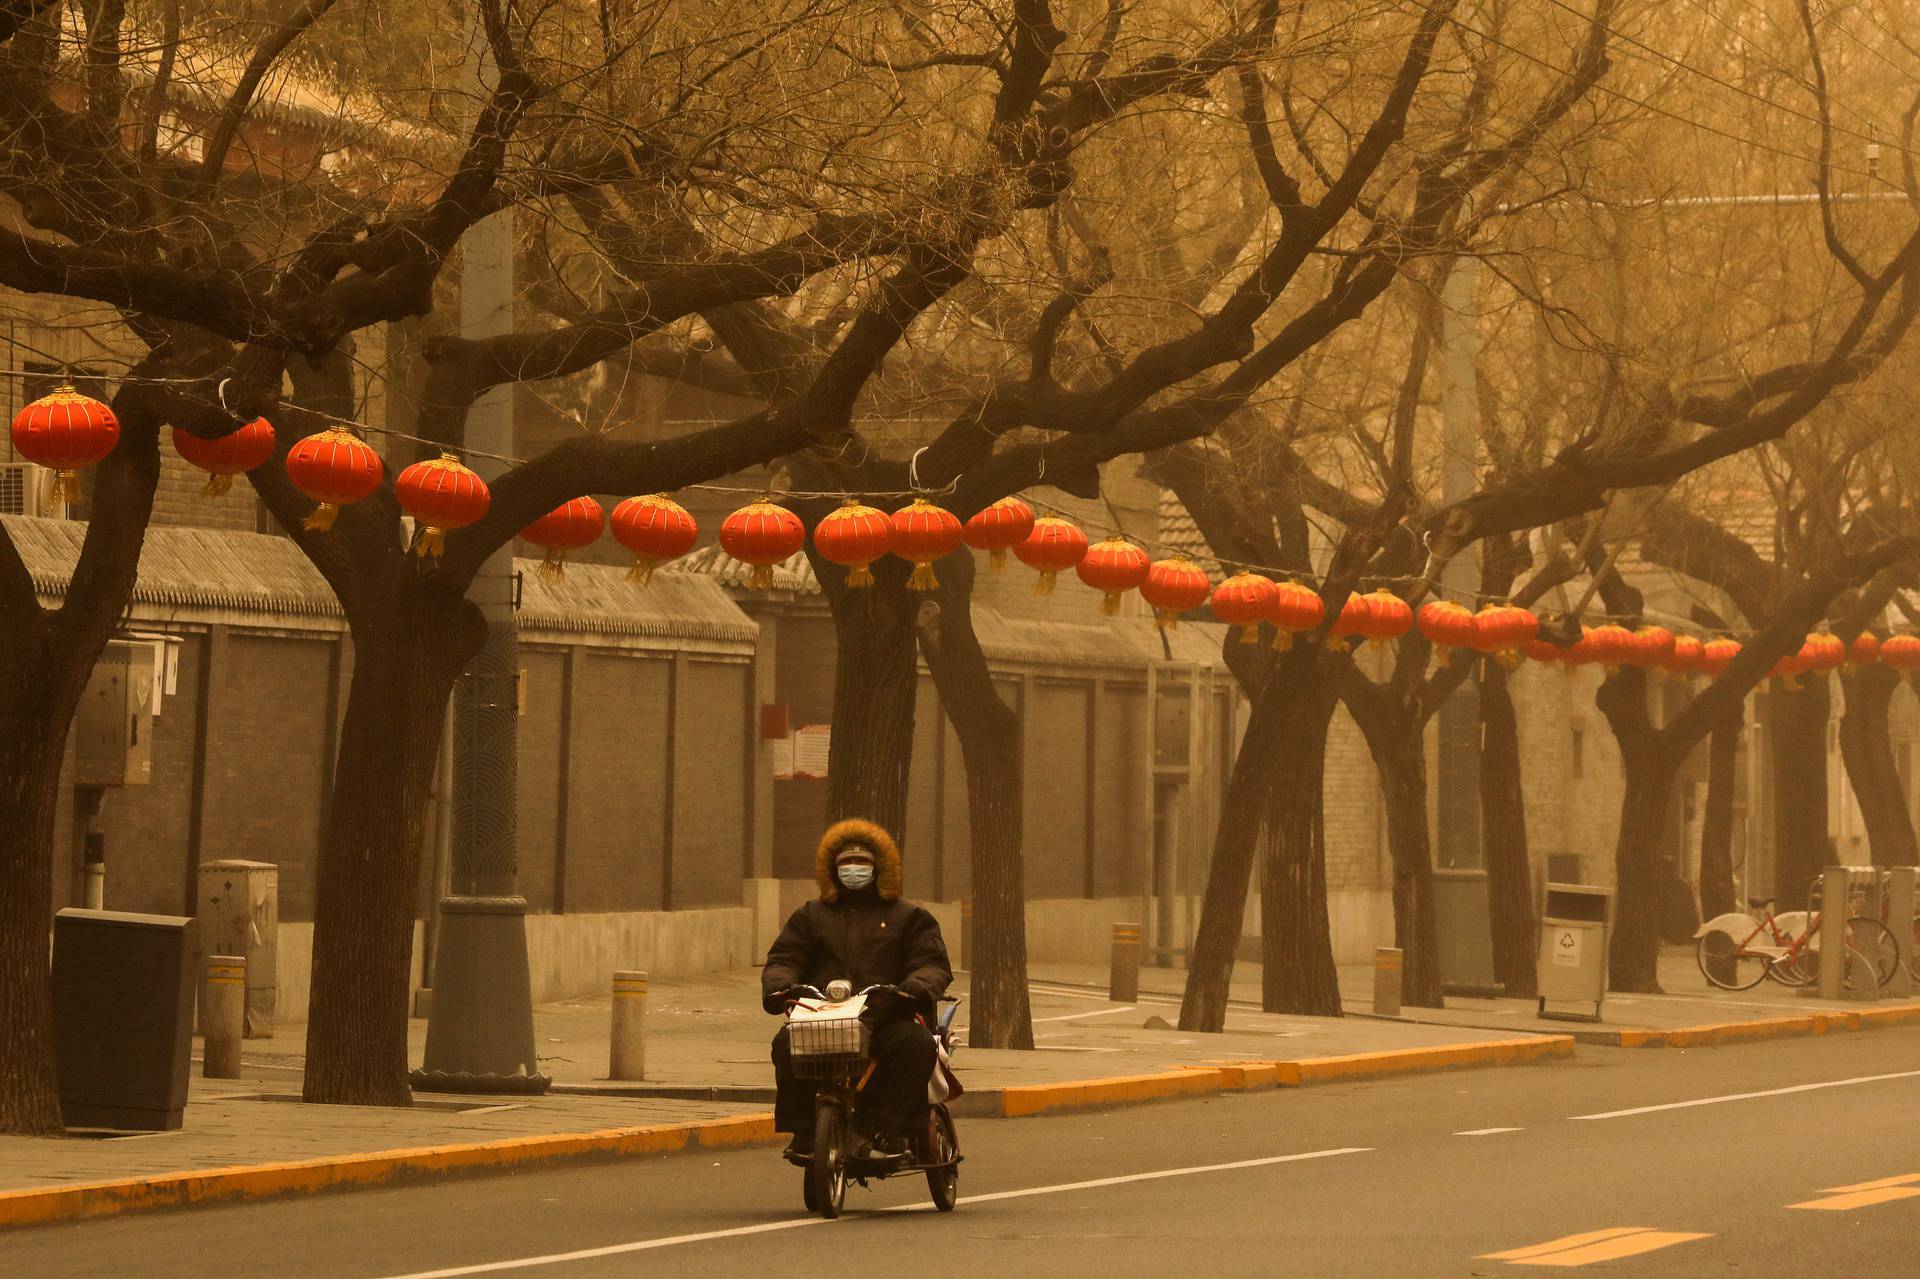 Sandstorm in Beijing, China